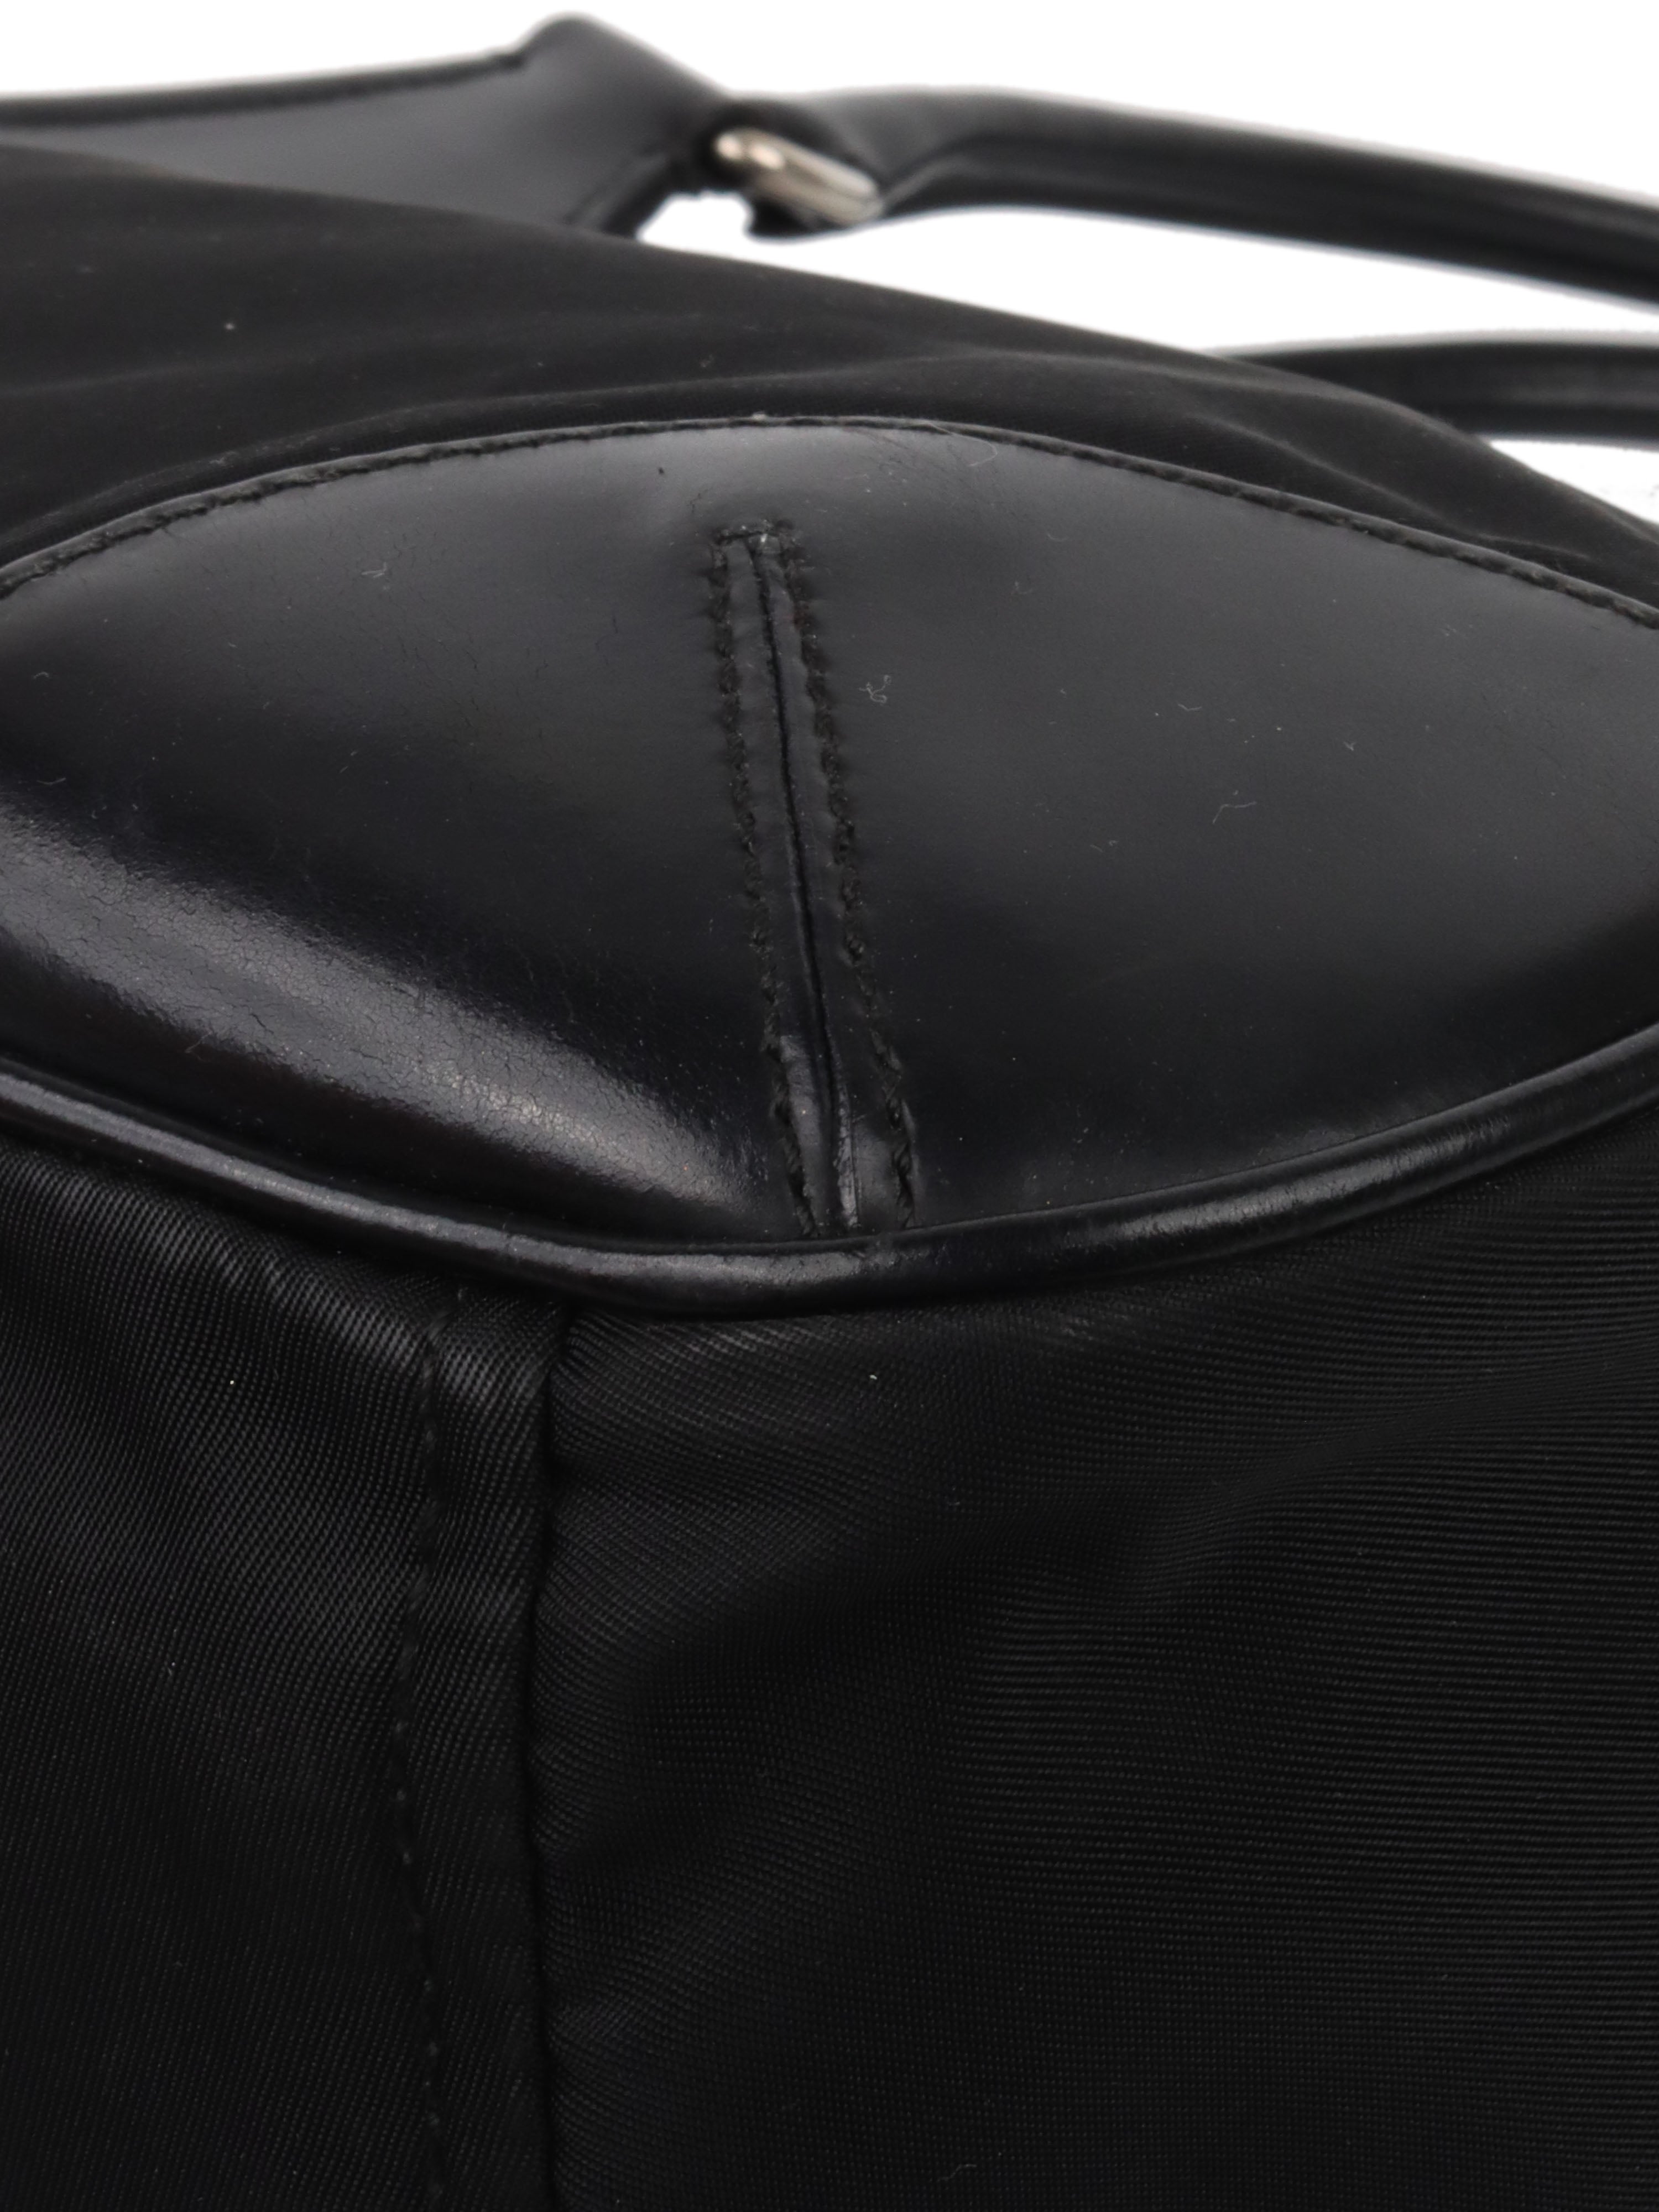 Prada Black Nylon Vintage Shoulder Bag.